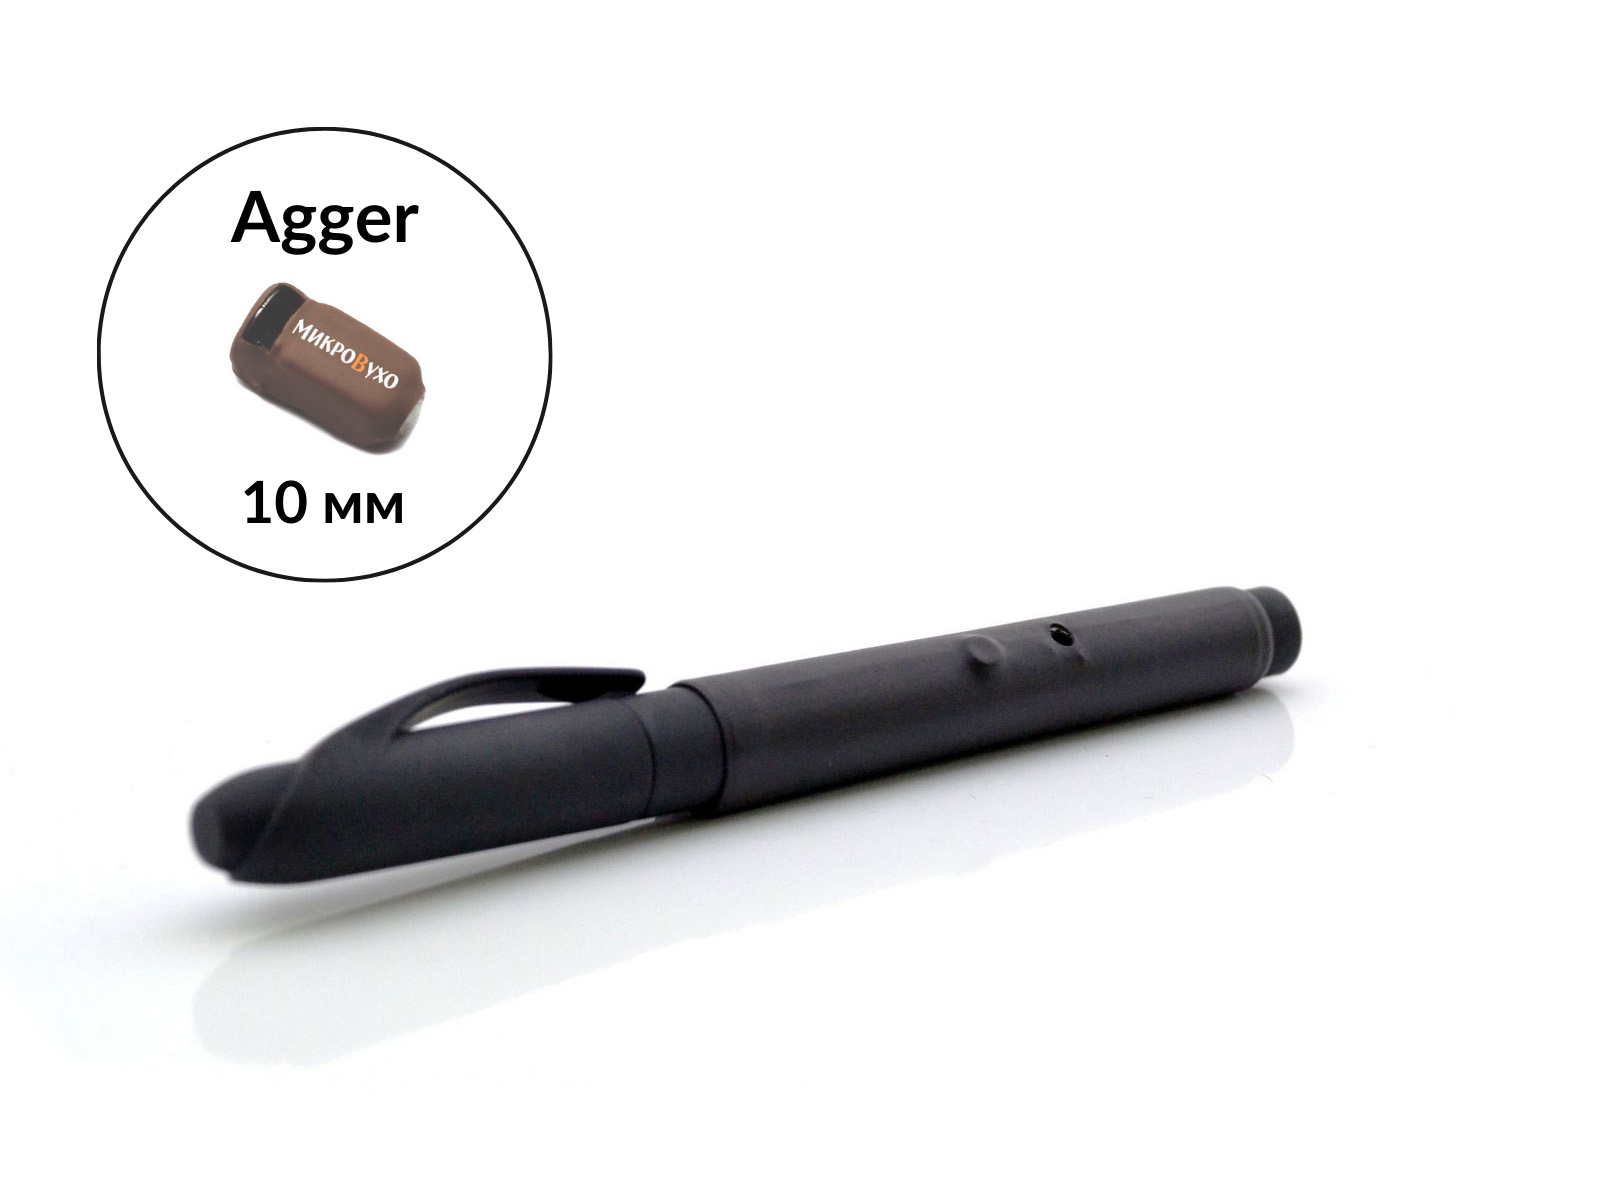 Гарнитура Ручка Standard c капсульным микронаушником Agger 10 мм - изображение